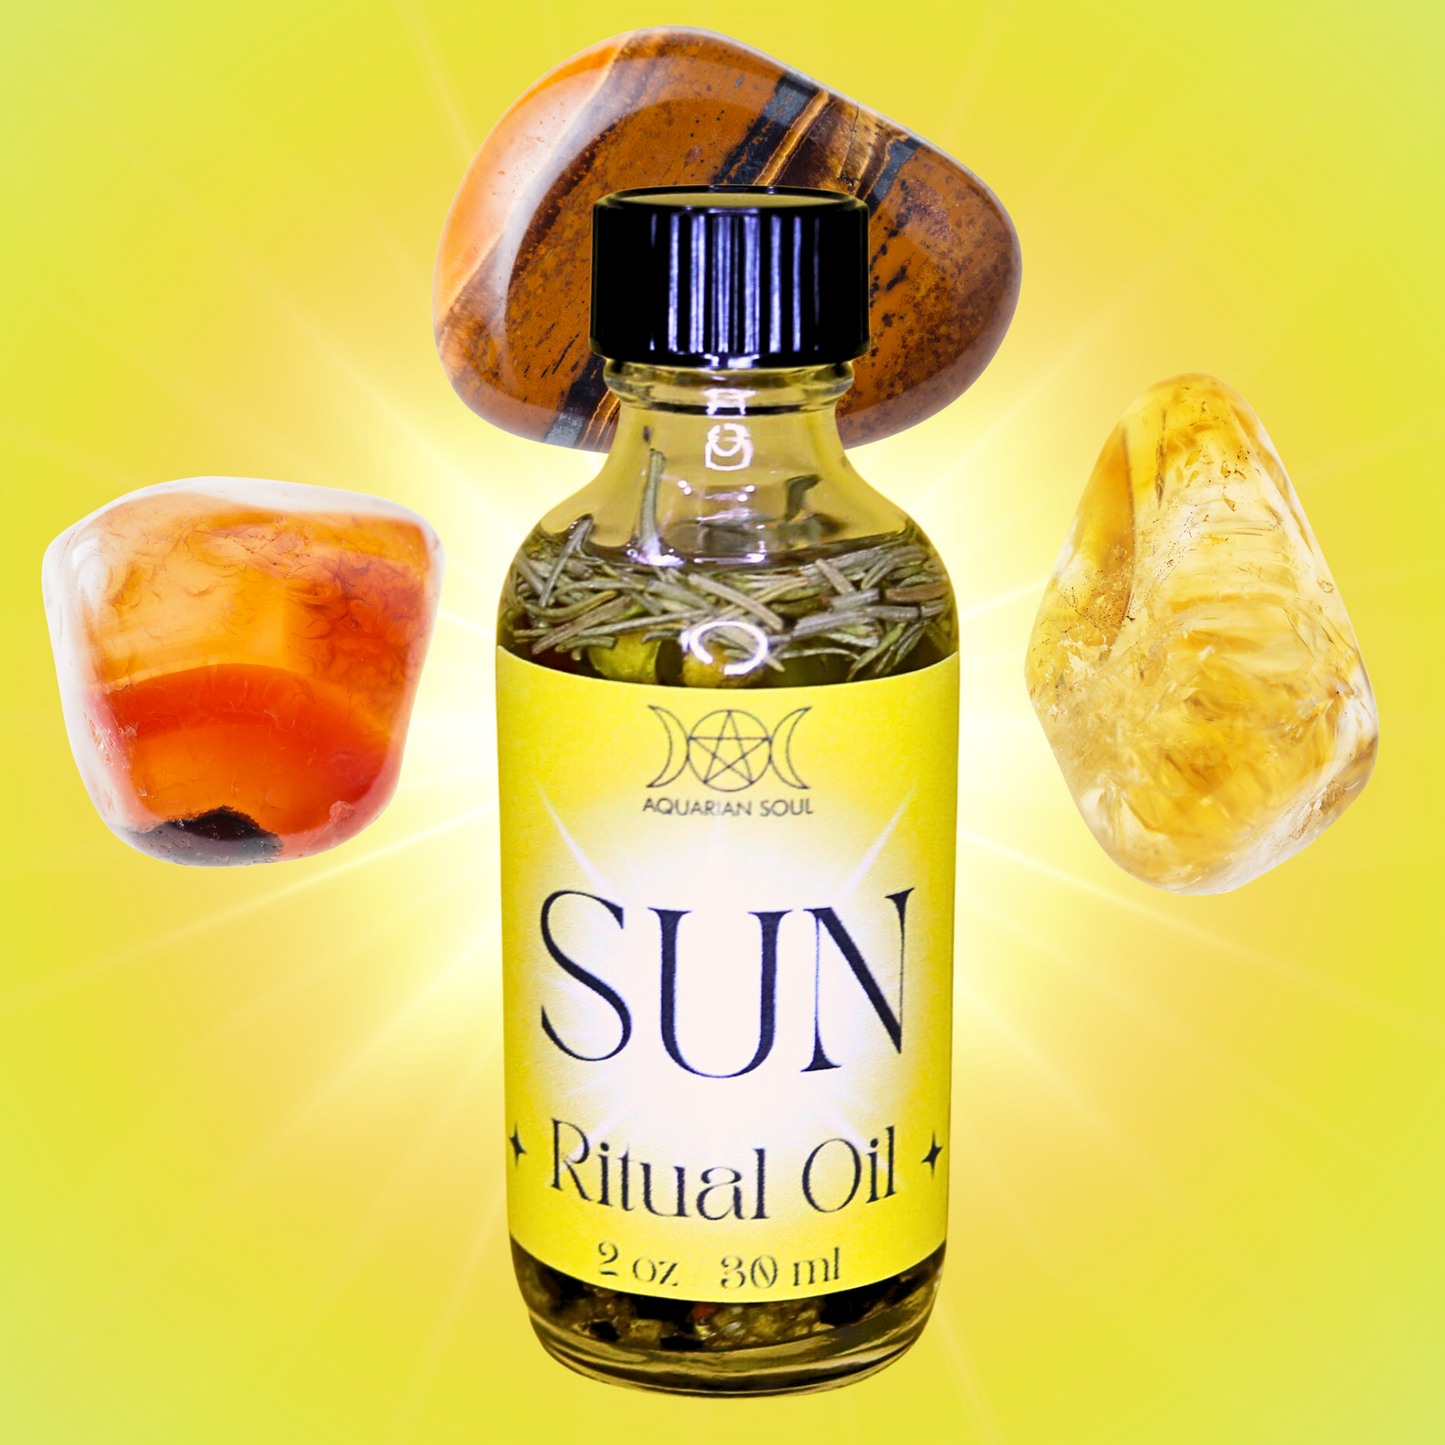 Sun Ritual Oil